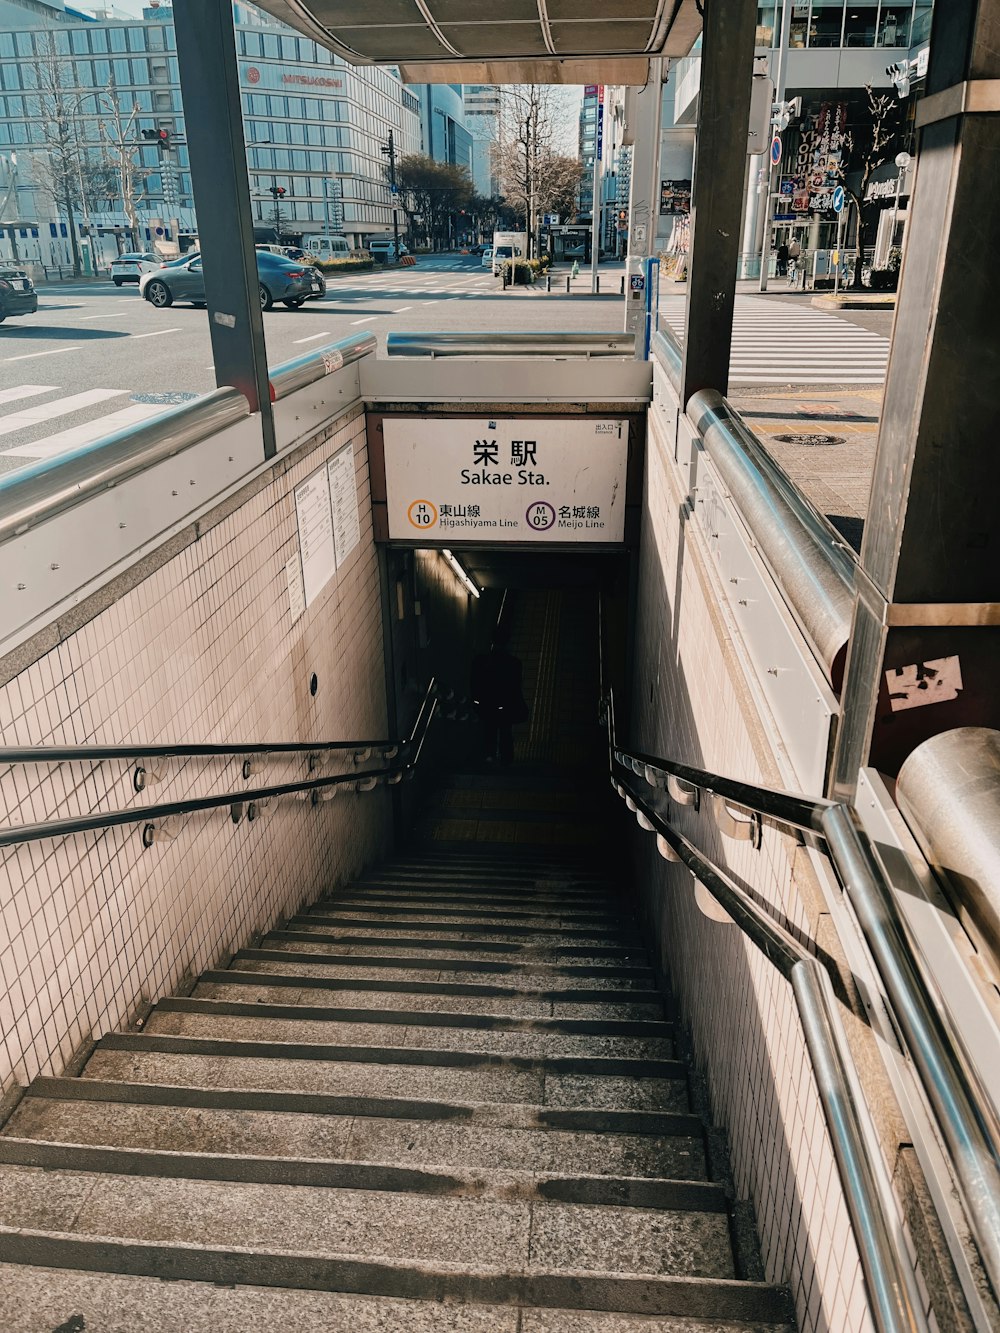 地下鉄の駅に続く階段のセット